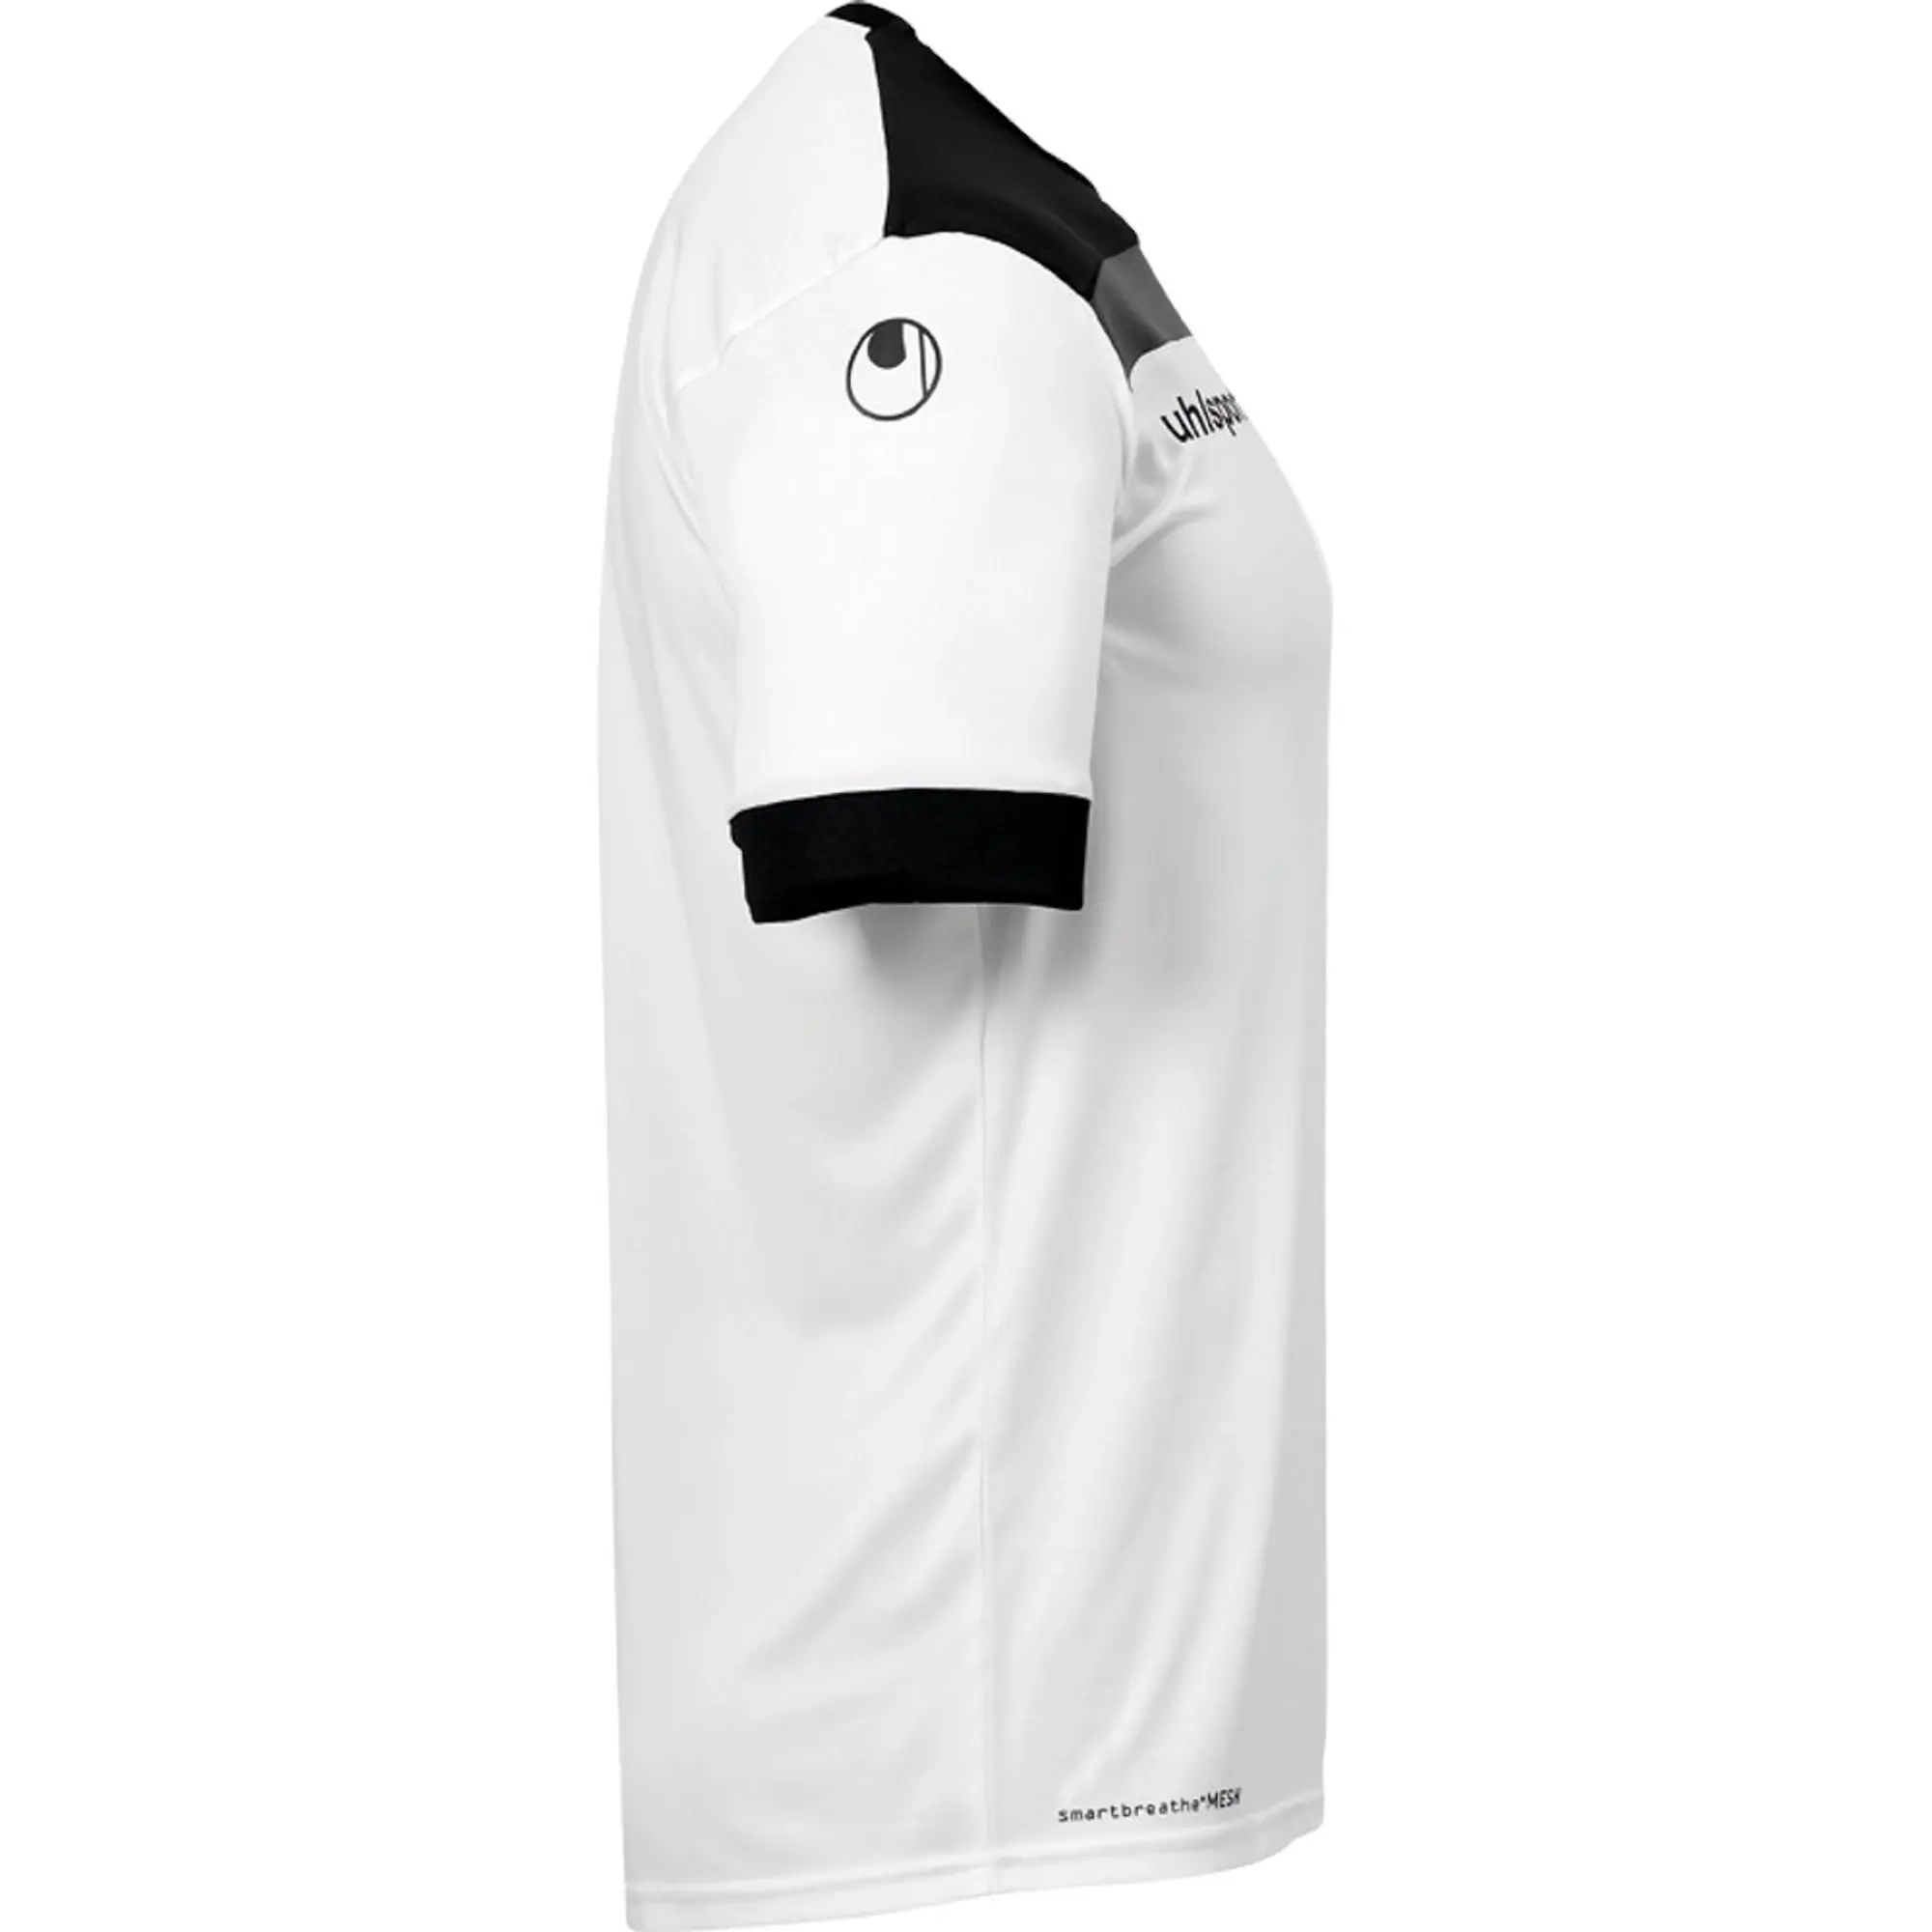 Uhlsport Offense 23 Short Sleeve T-shirt  - White,Black